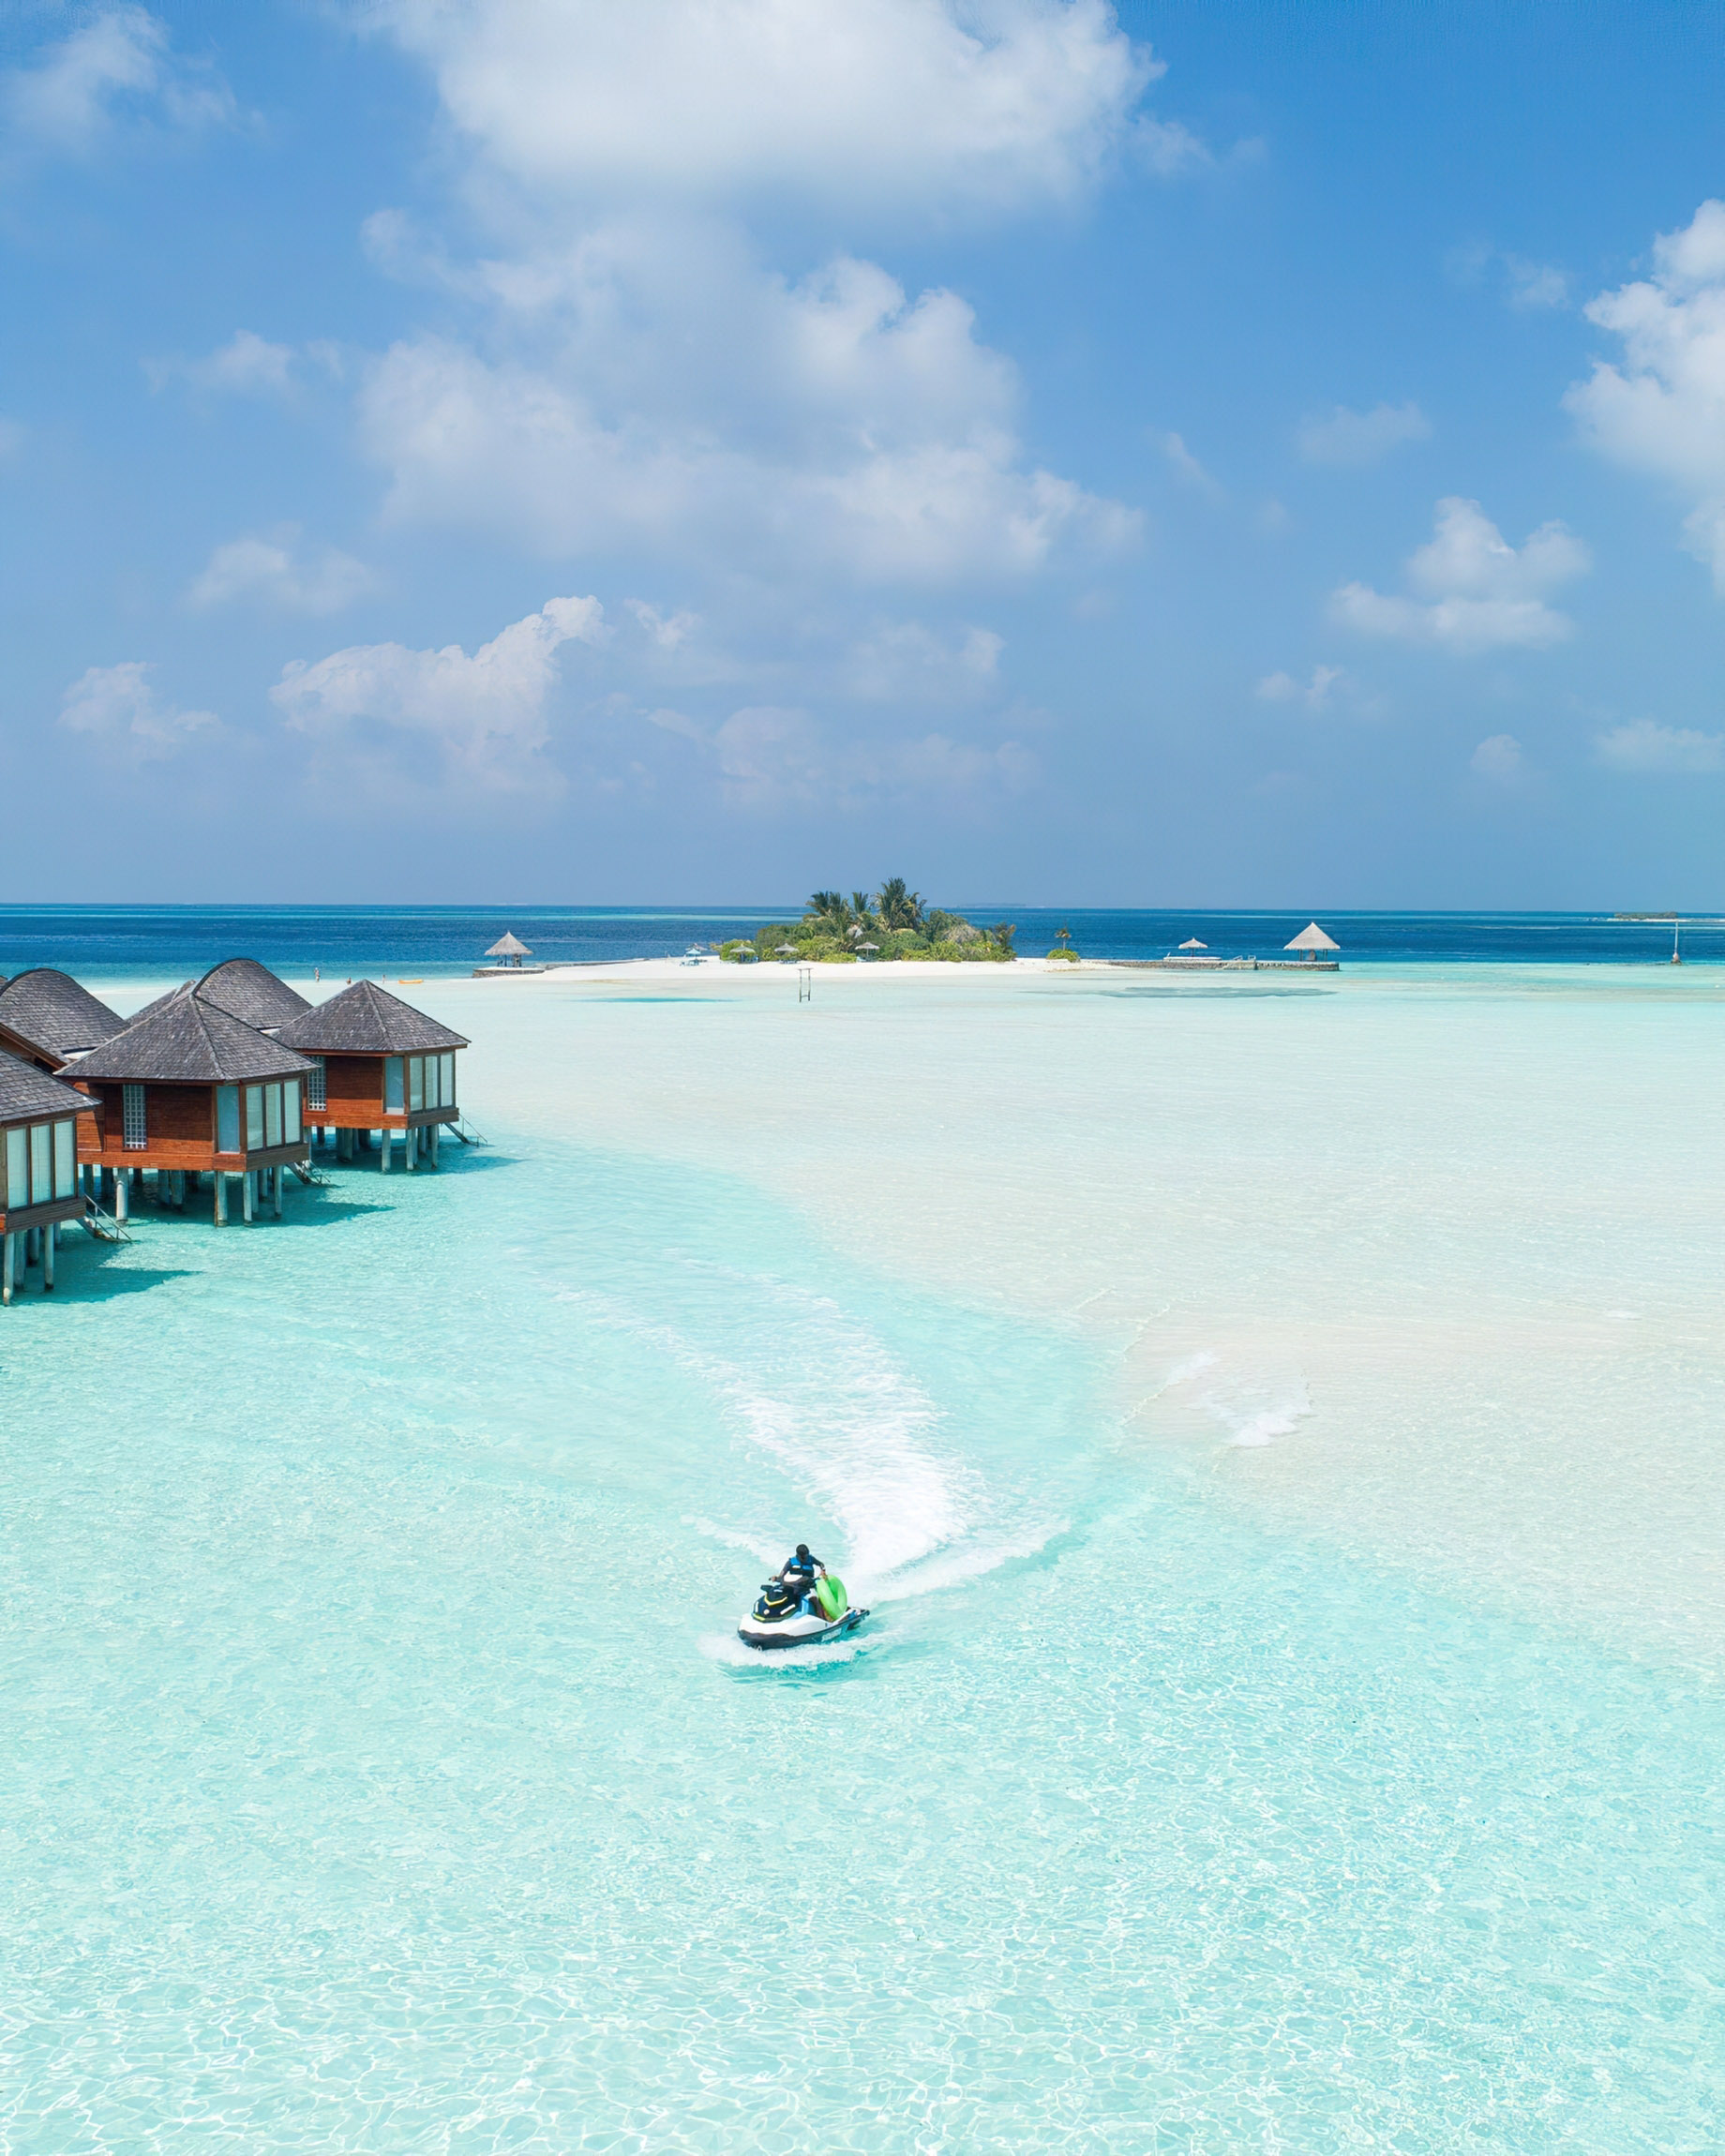 Anantara Thigu Maldives Resort – South Male Atoll, Maldives – Jet Skiing